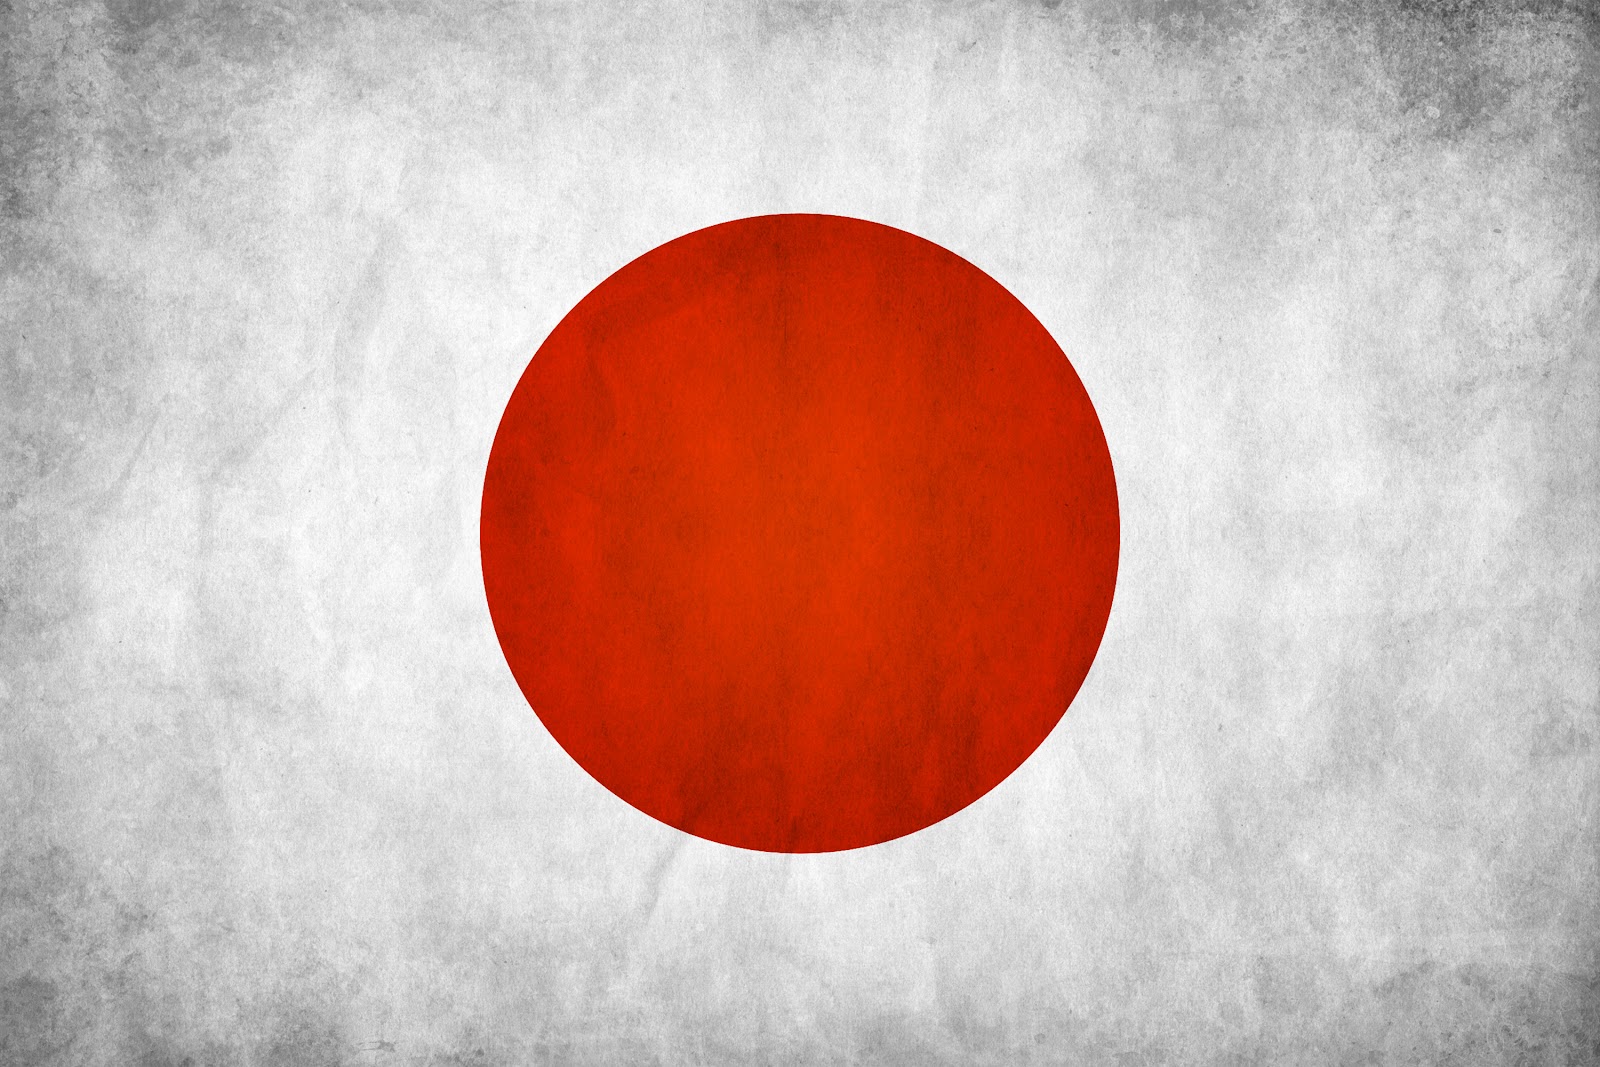 http://4.bp.blogspot.com/-coYLidzJFtI/T2YG5tG4INI/AAAAAAAACd0/13kYjlvA038/s1600/flag+japan.jpg